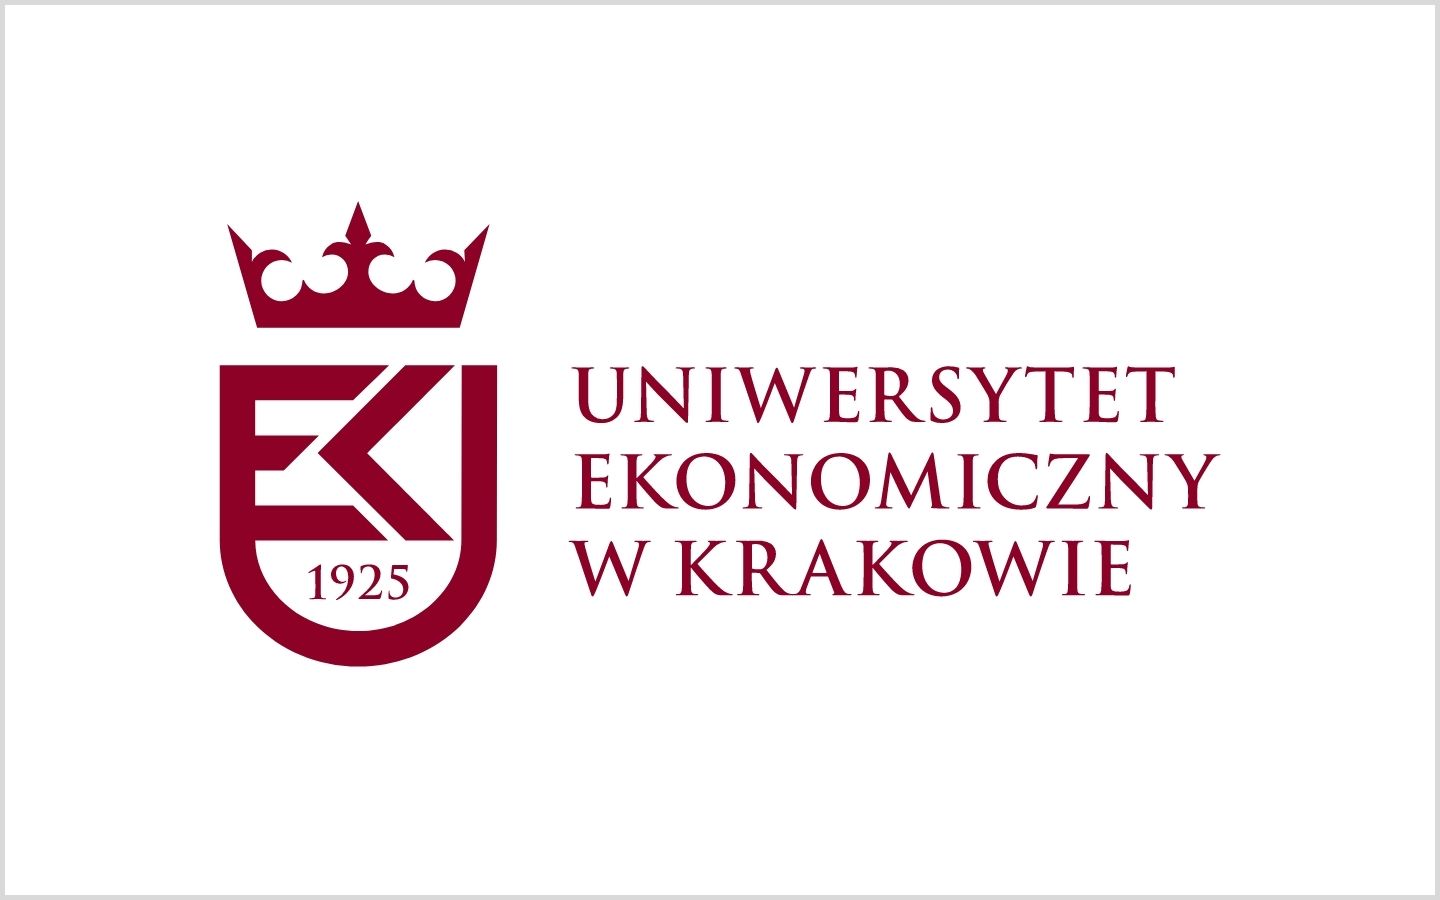 Cracow University of Economics Logo